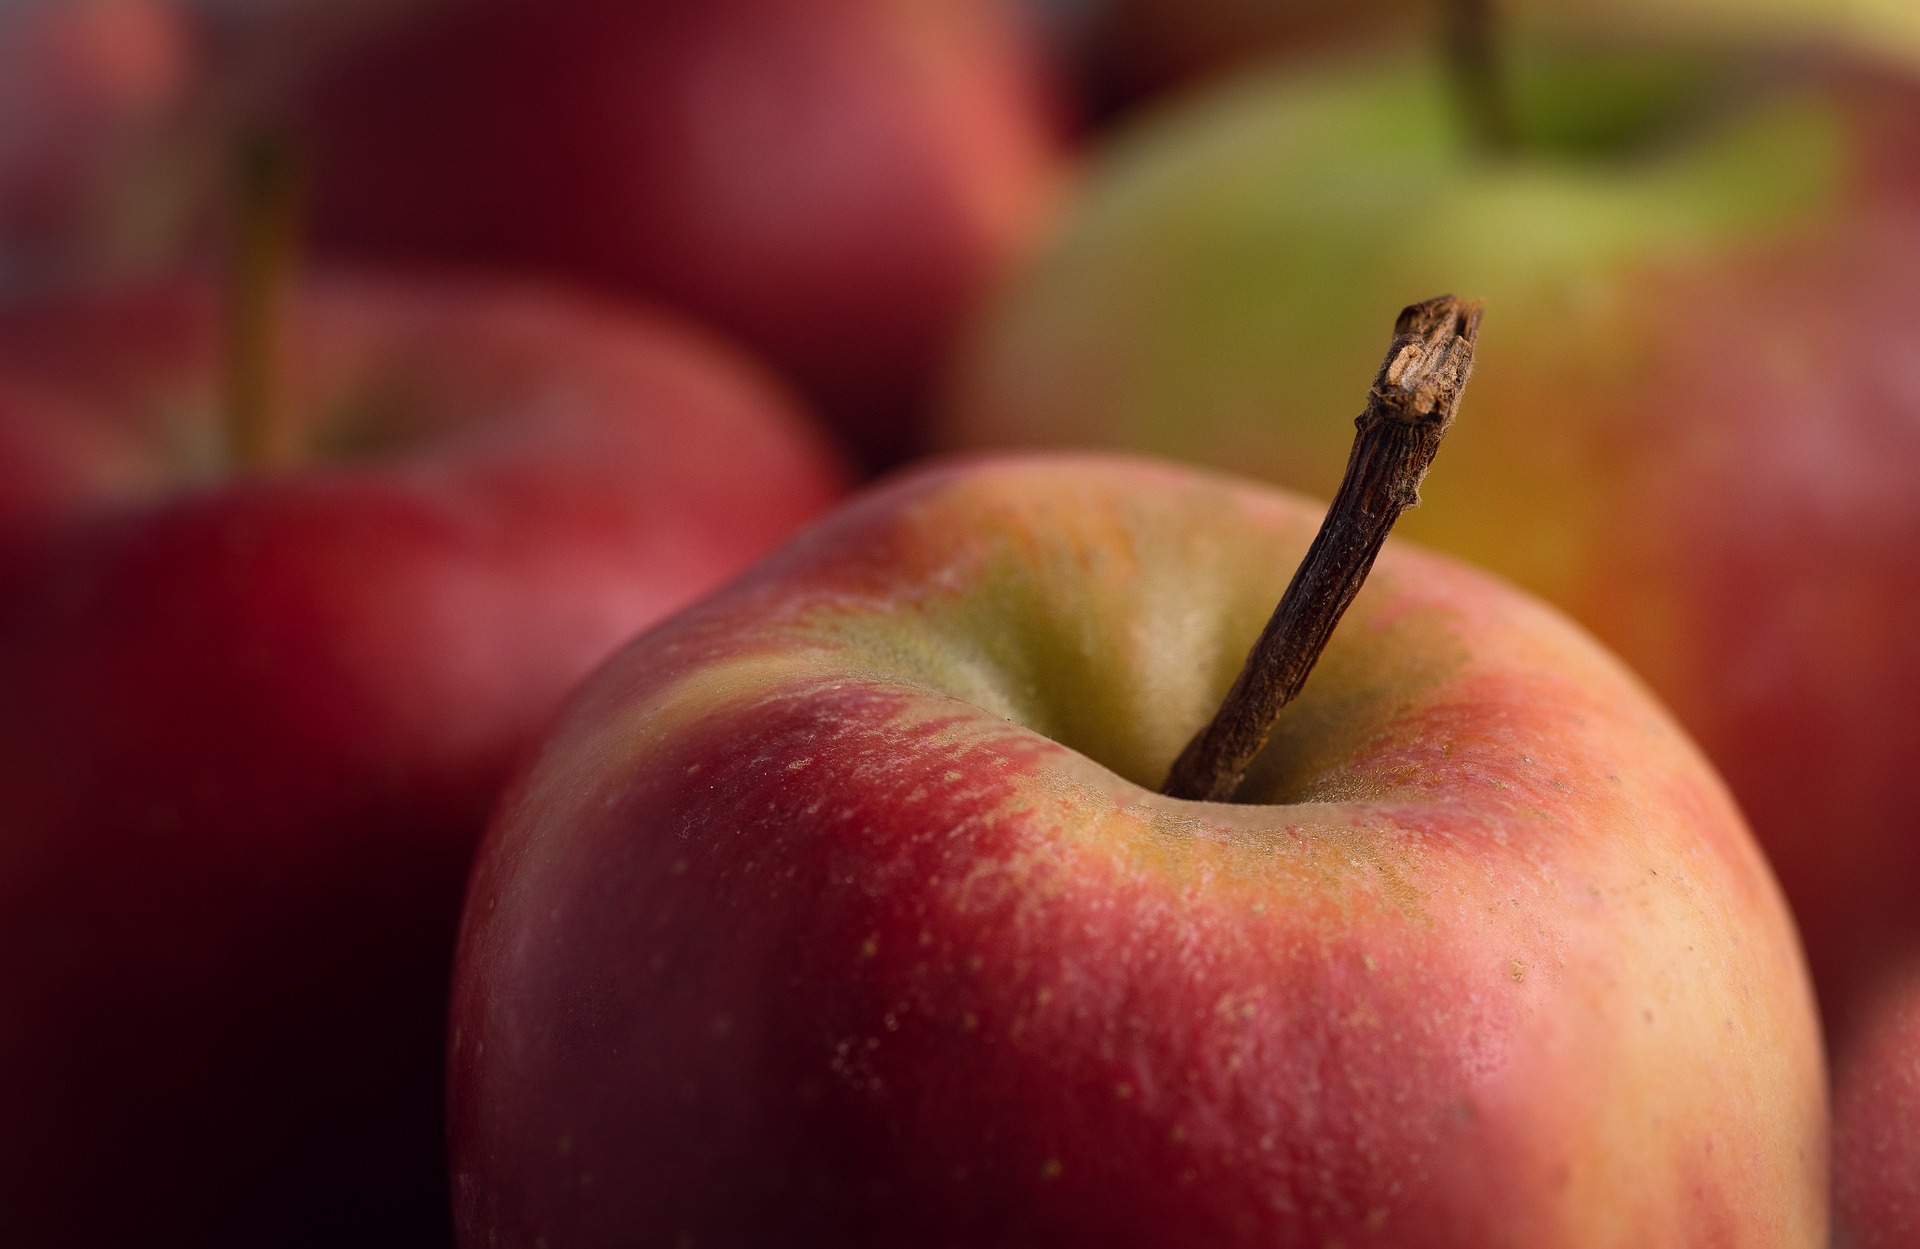 Warum sind Äpfel so gesund?